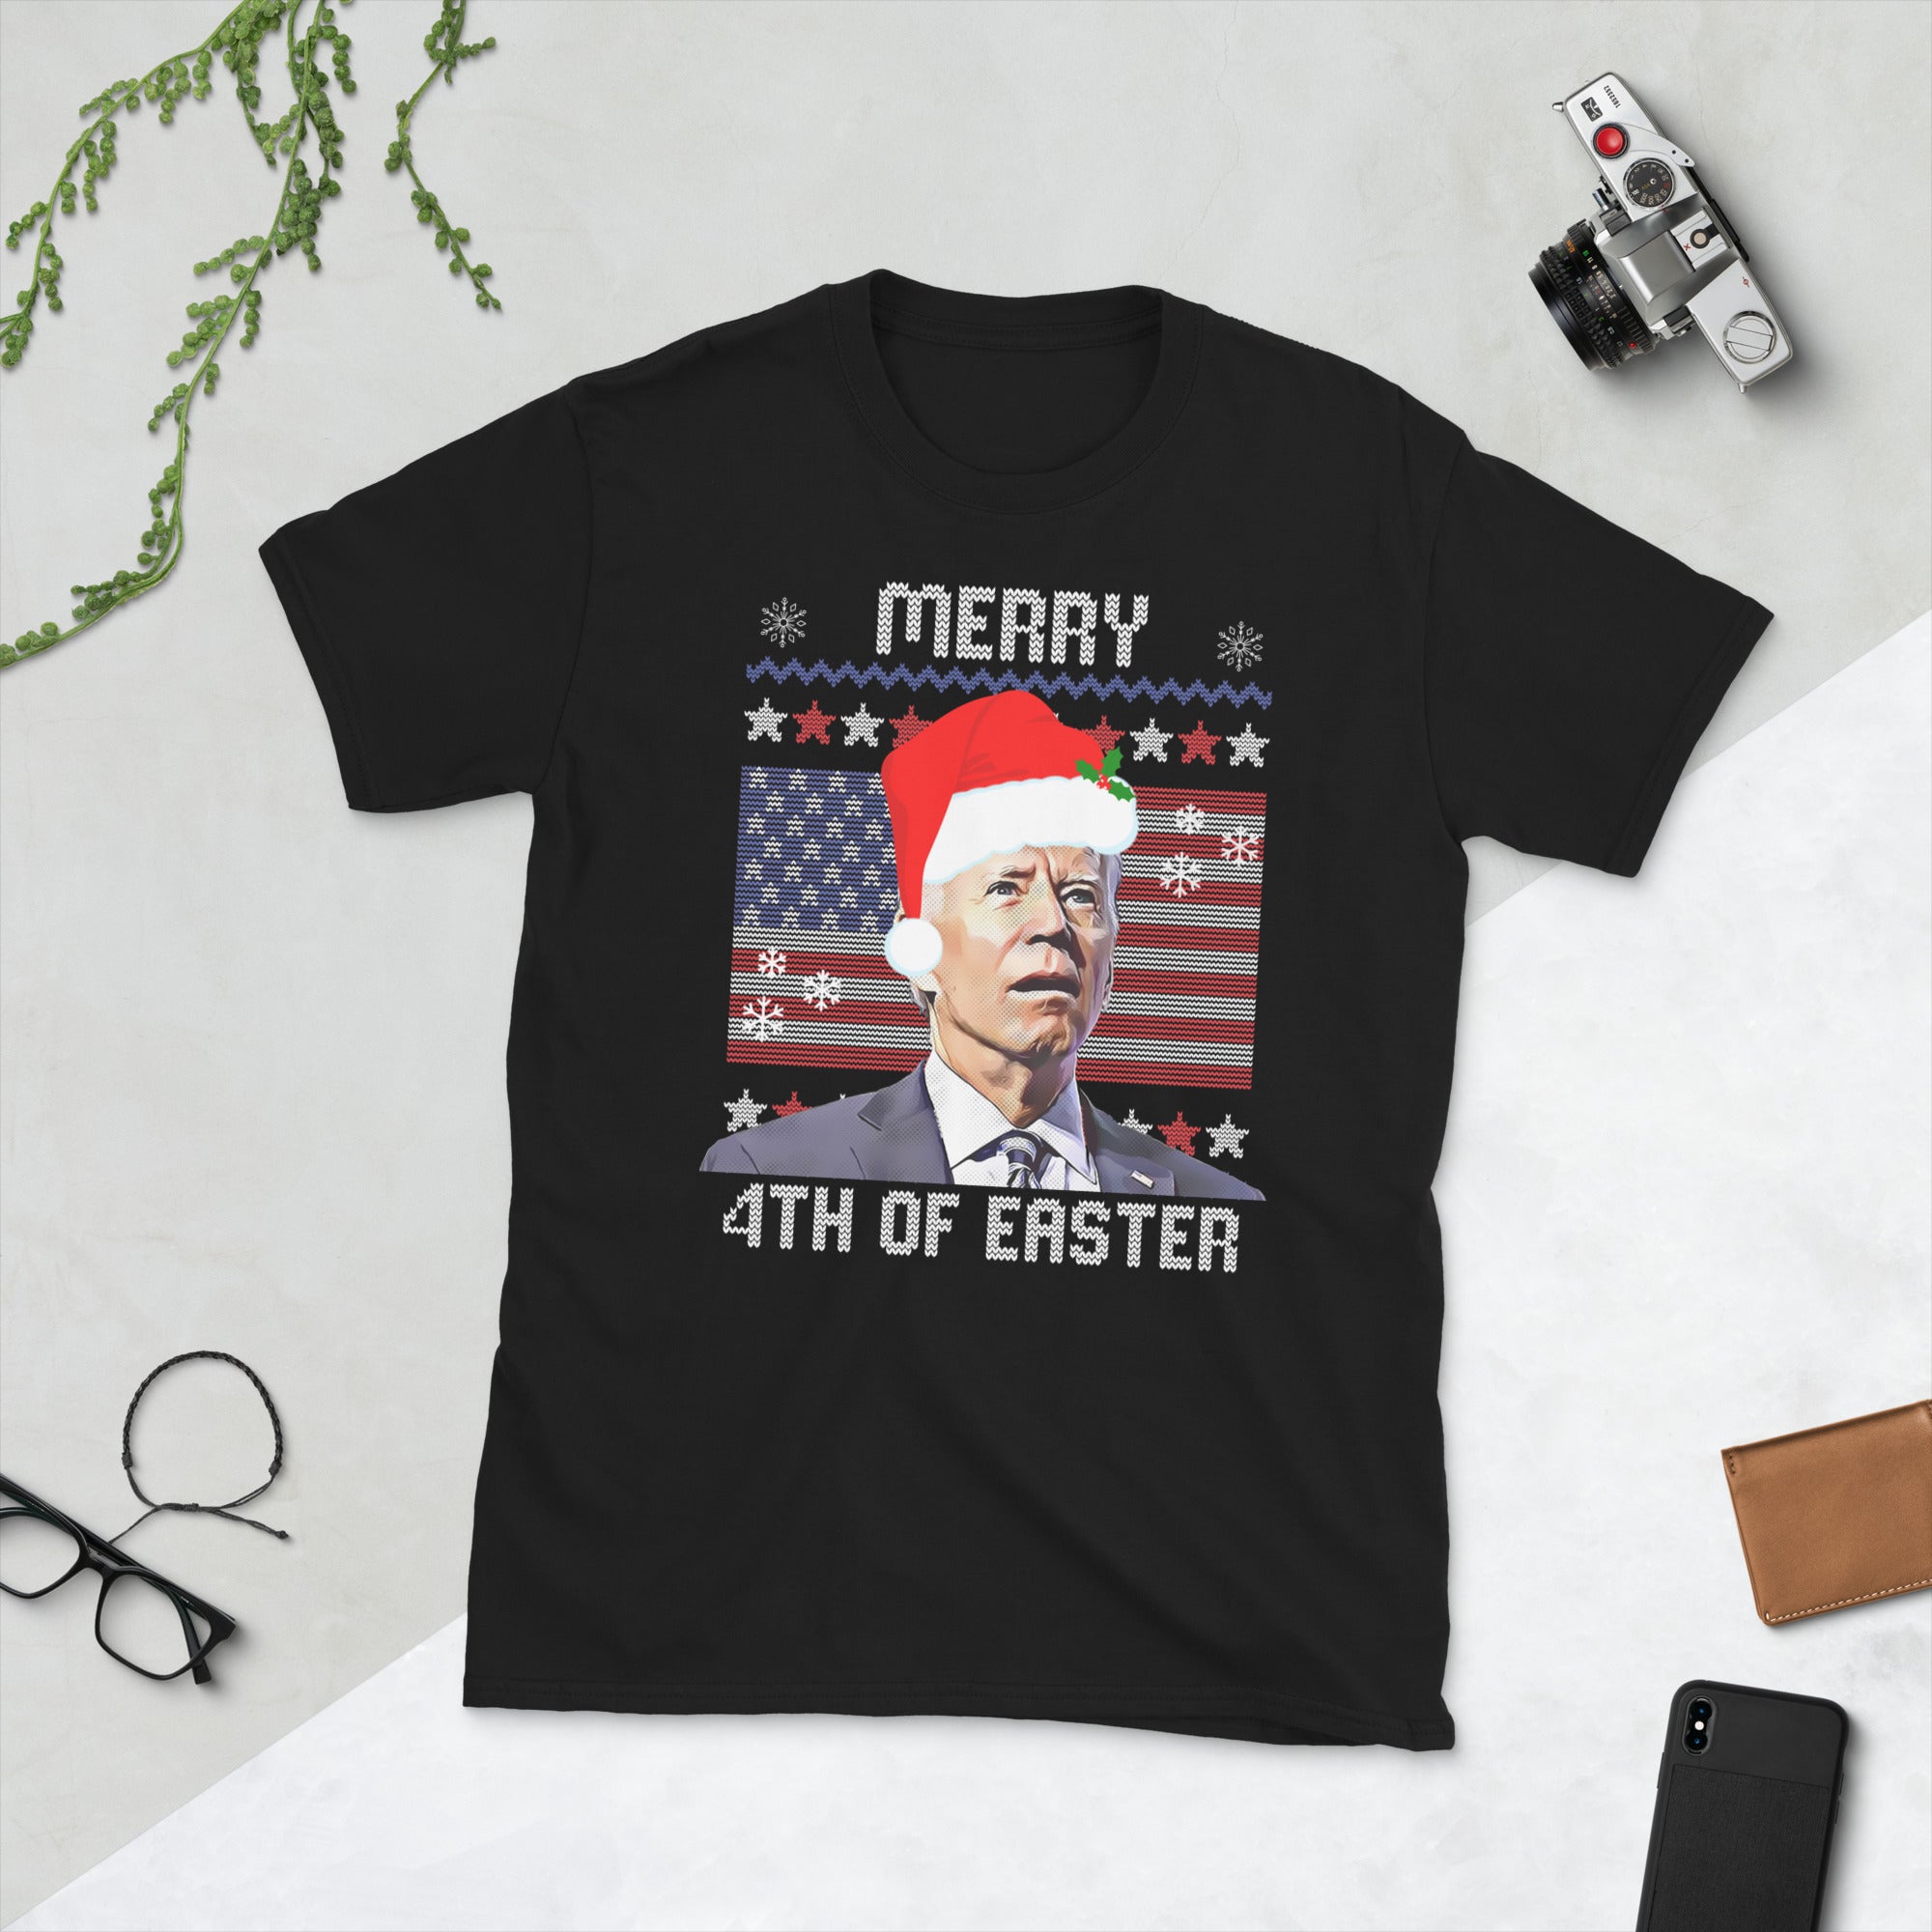 Merry 4th Of Easter Funny Xmas Joe Biden Confused, Anti Joe Biden Christmas Shirt, Funny Biden Xmas Tshirt, FJB Shirts Shirt